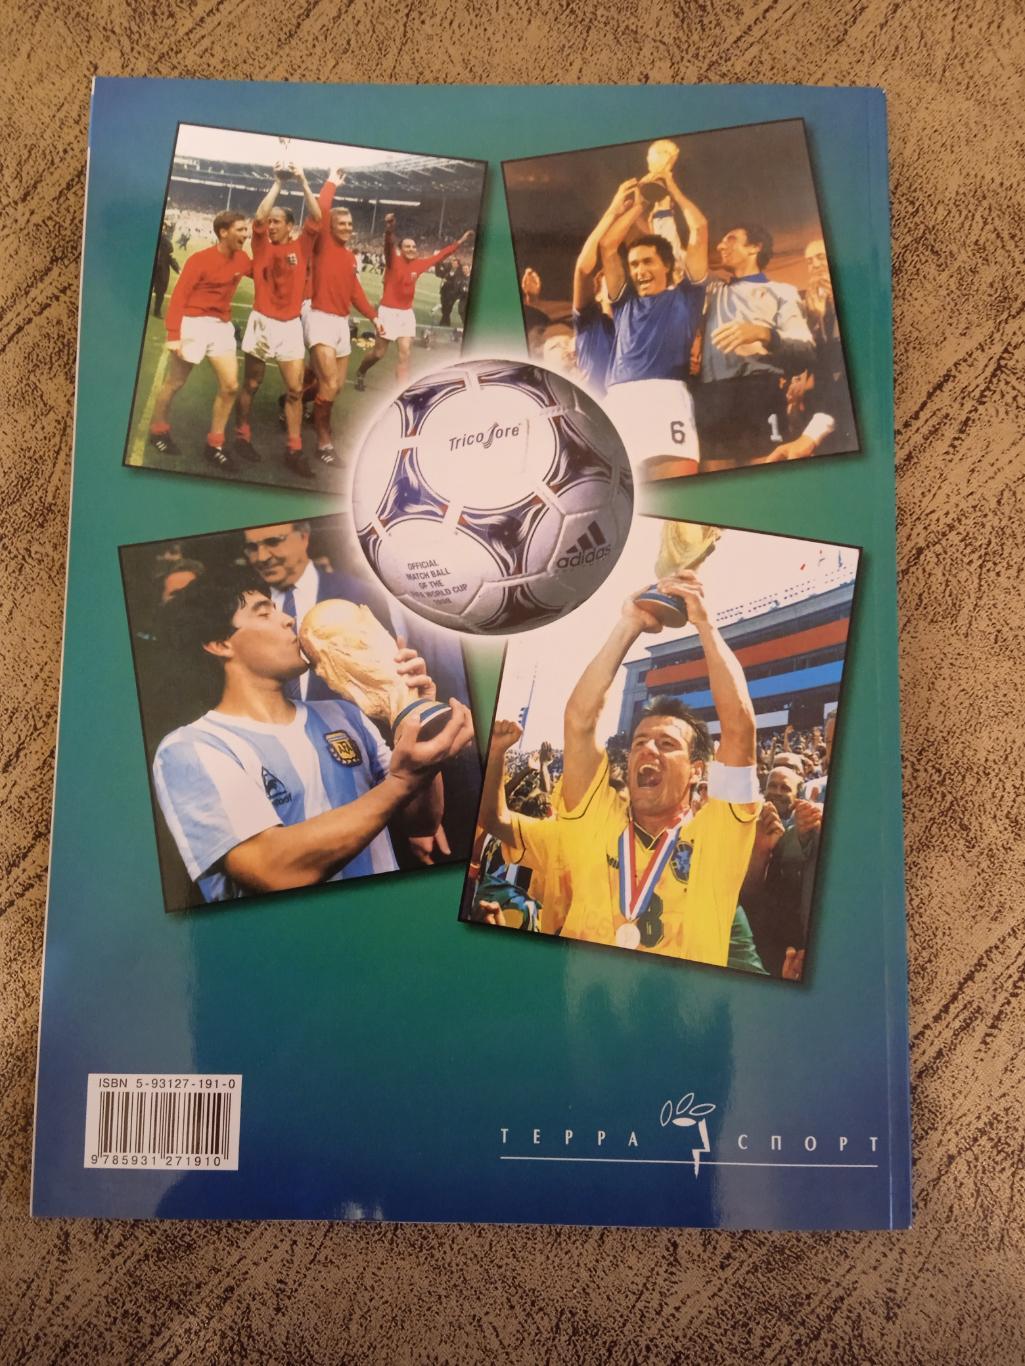 Чемпионат мира по футболу 2002.Корея/Япония. Терра-Спорт.Специальный выпуск. 1